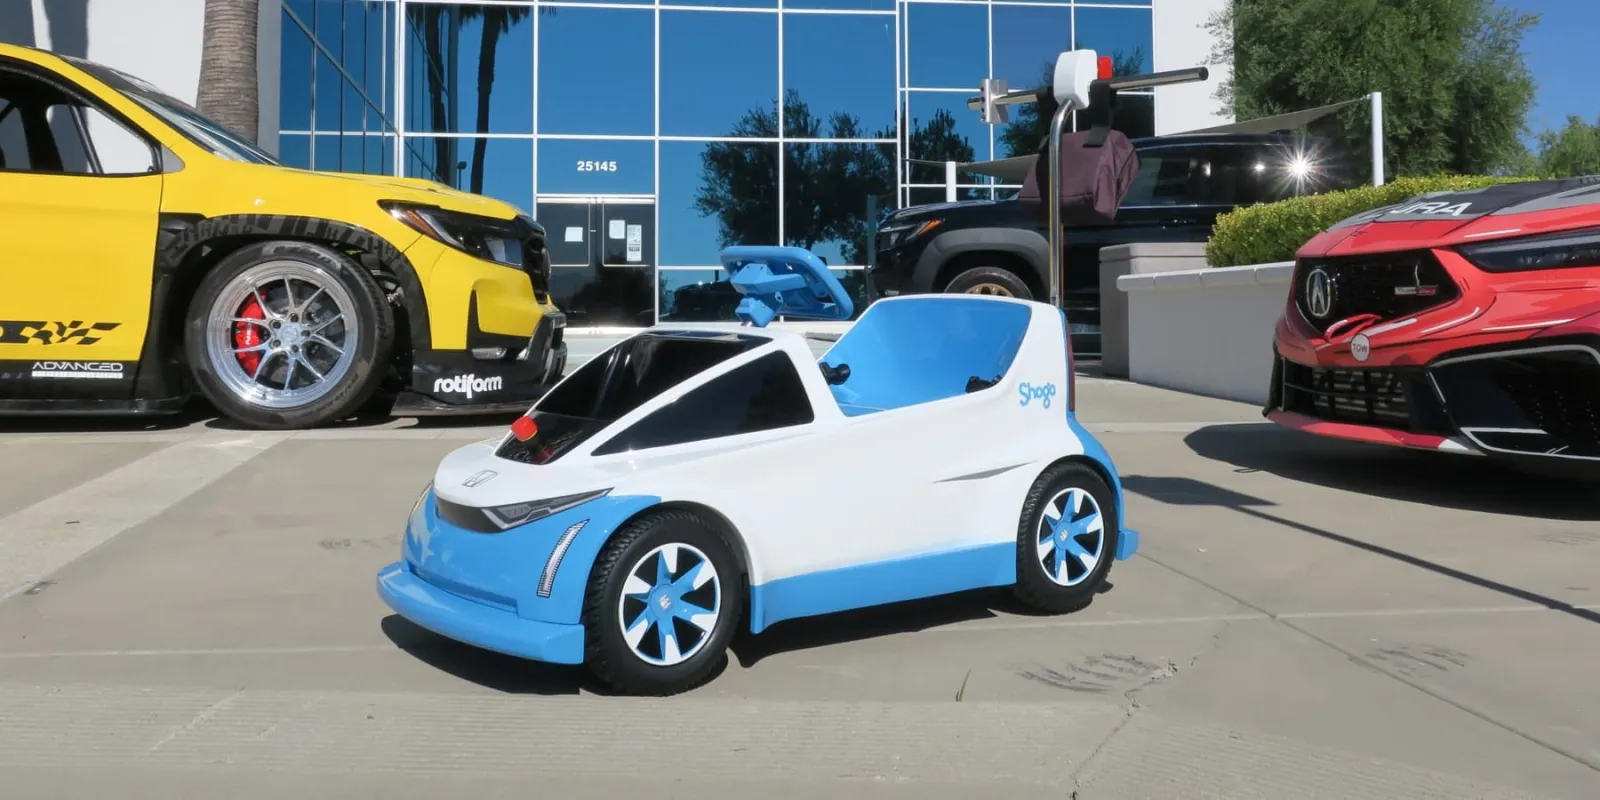 Honda Shogo: The Tiny Electric Car